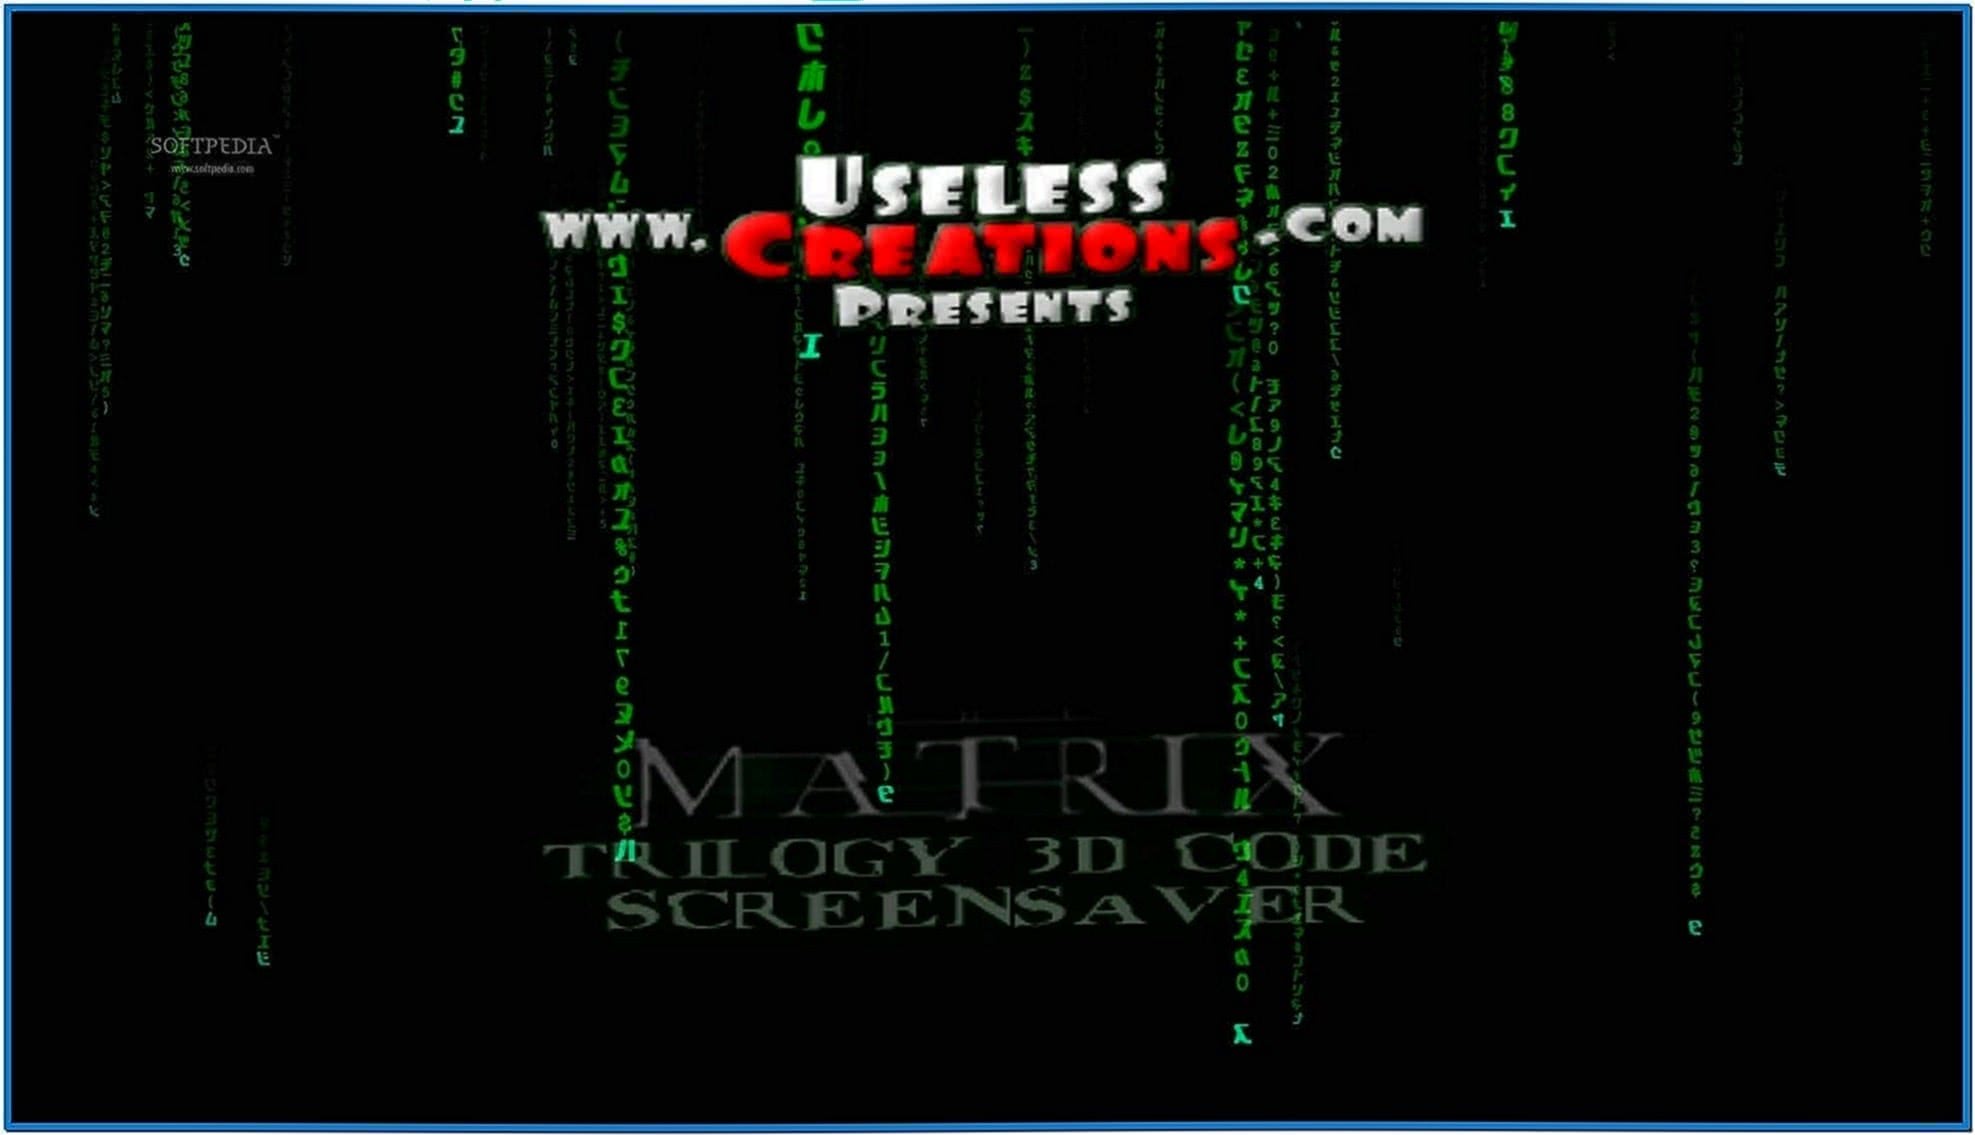 The Matrix Trilogy 3D Screensaver